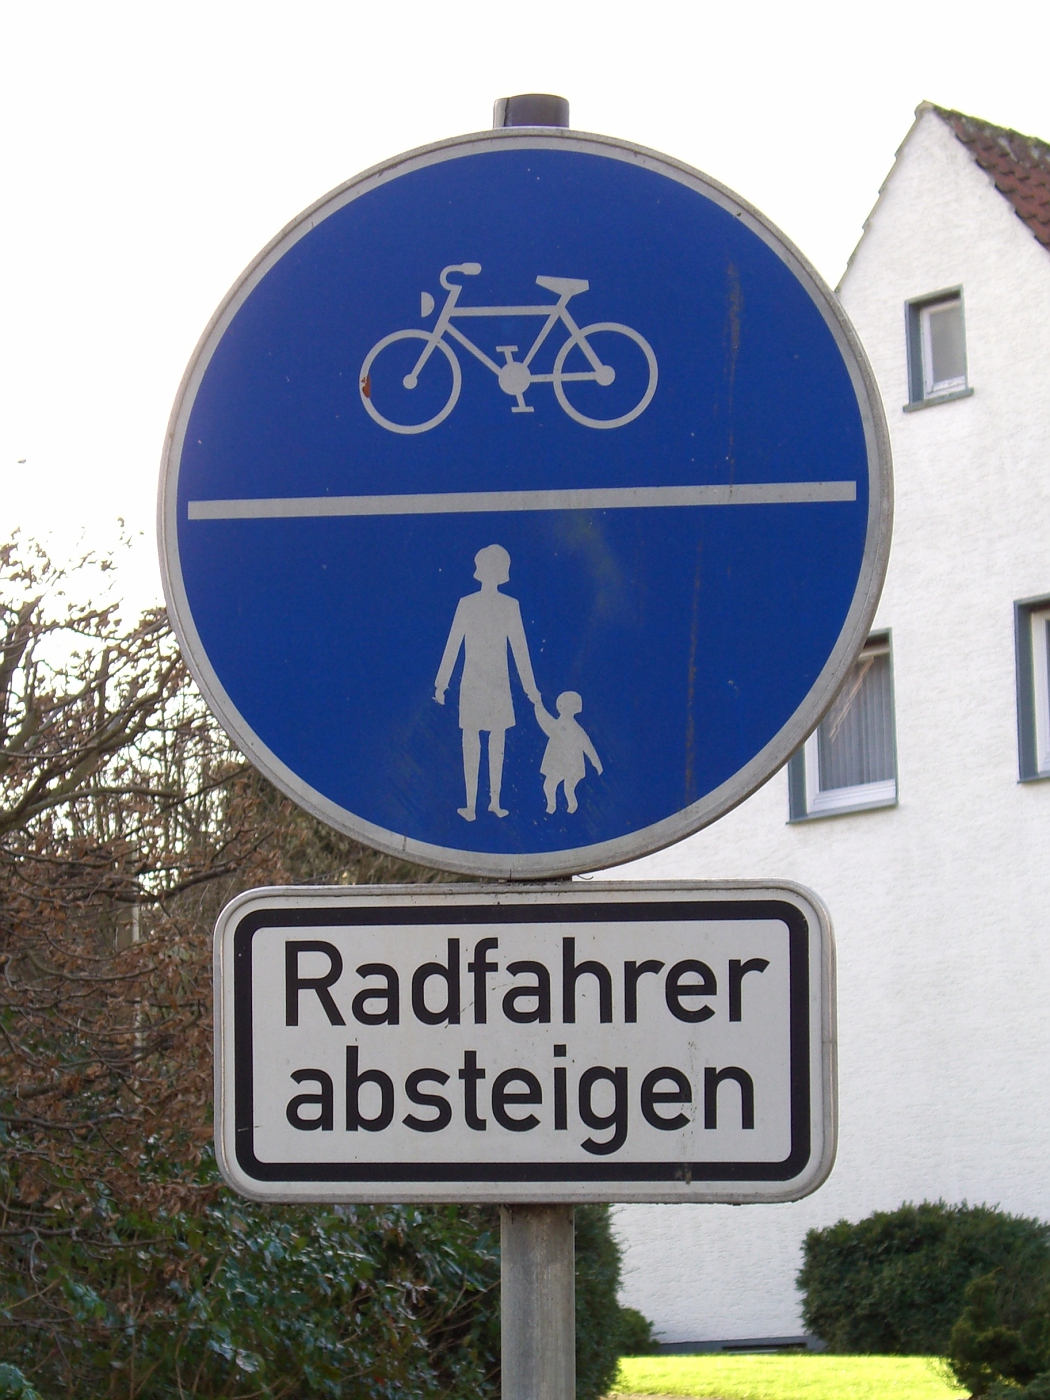 Radfahrer absteigen